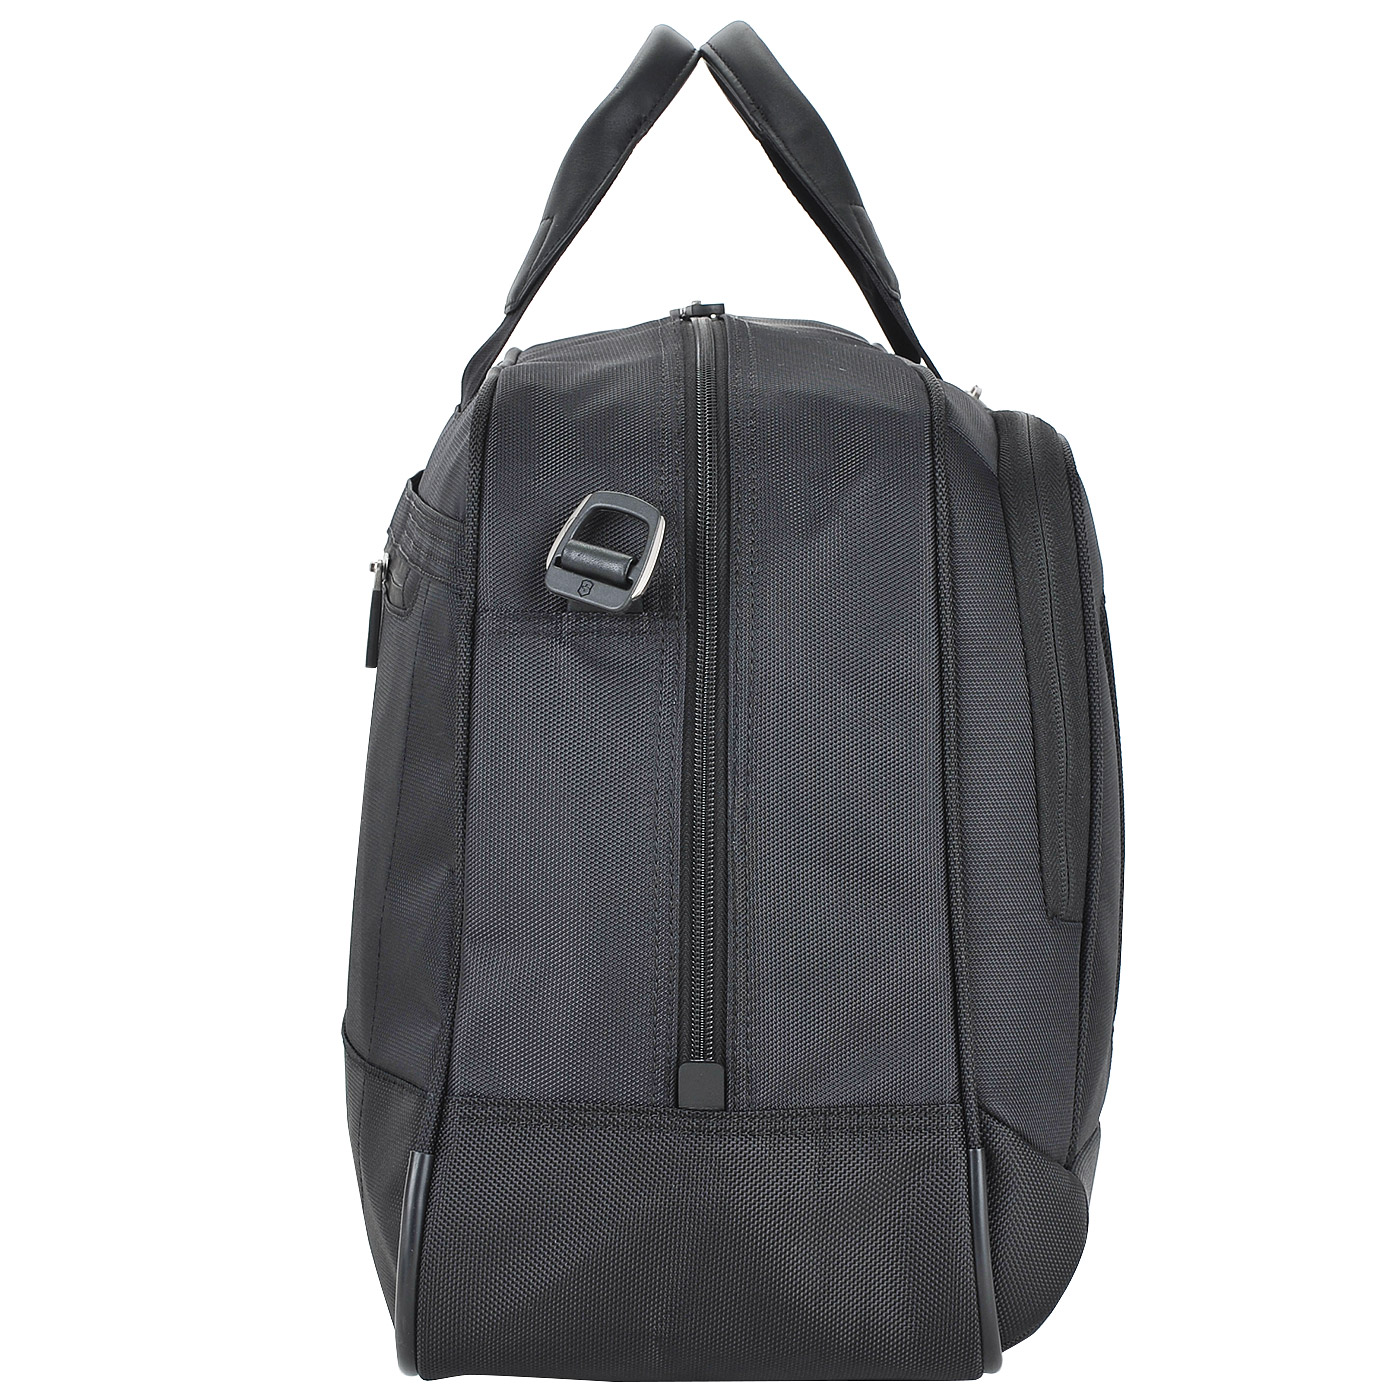 Дорожная сумка Victorinox One black 54 x 34 x 20 см